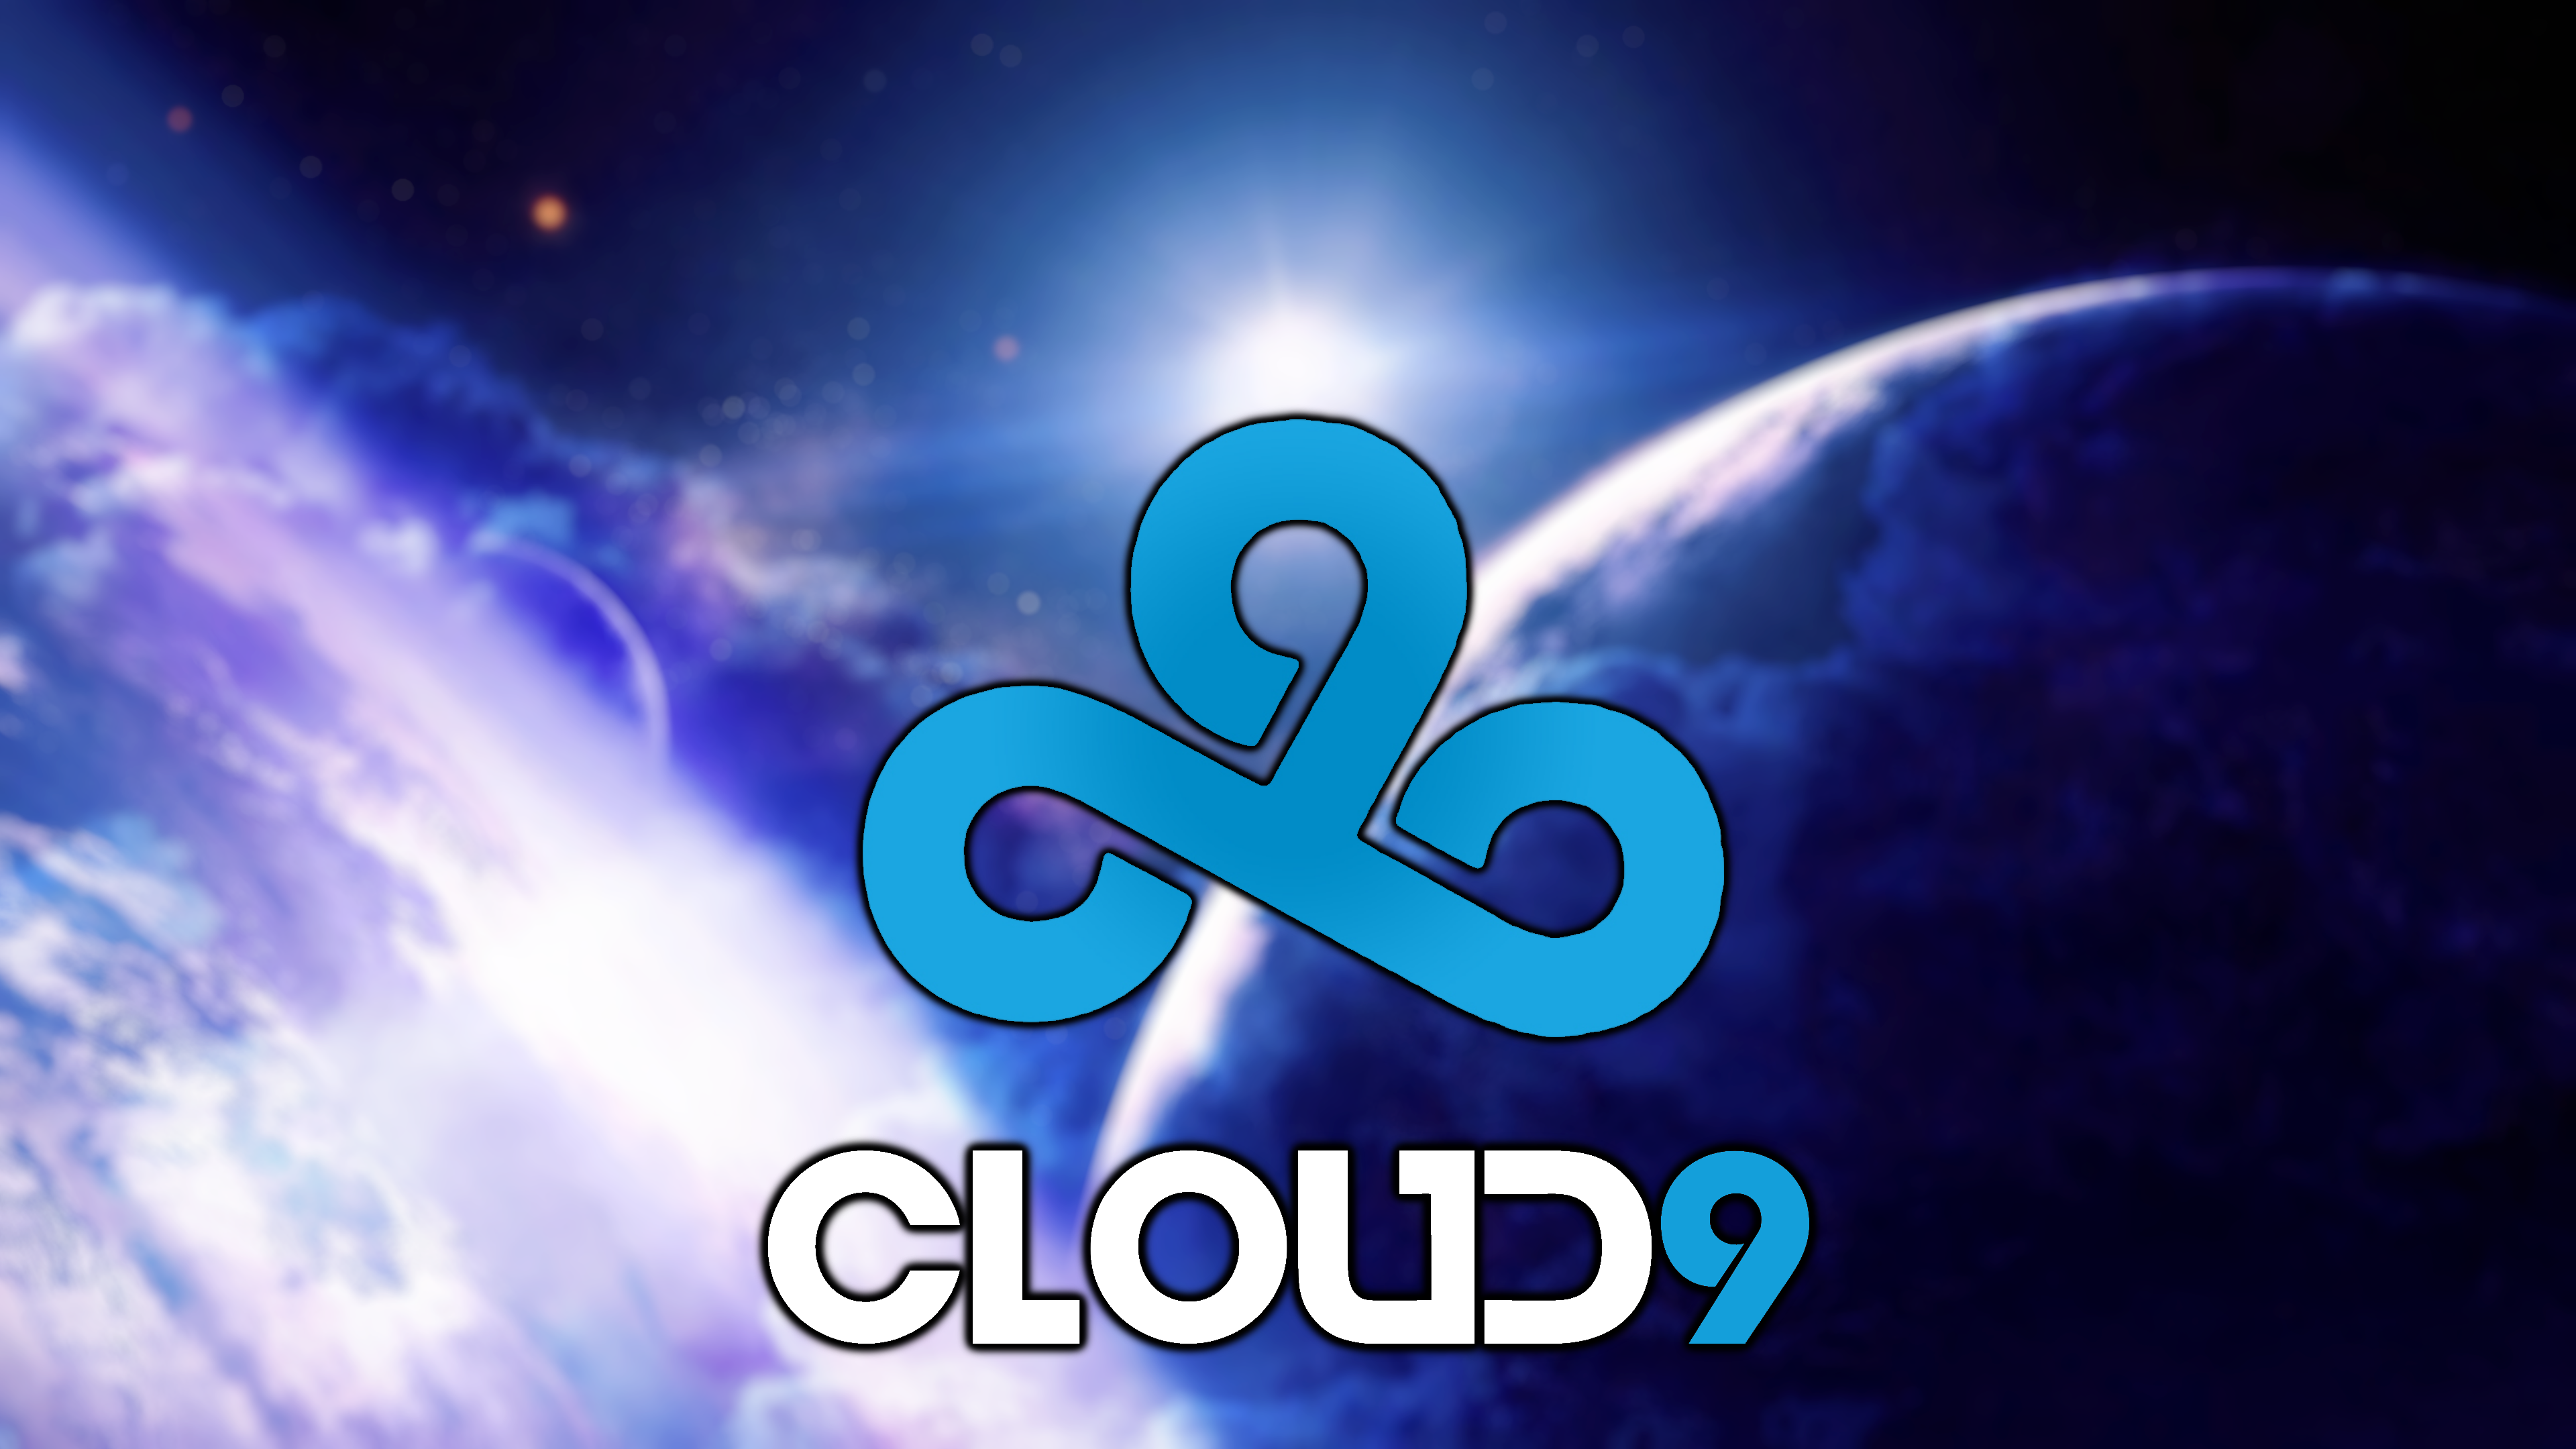 Клоуд 9. Широ Клауд 9. Клауд 9 КС го. Логотип cloud9.